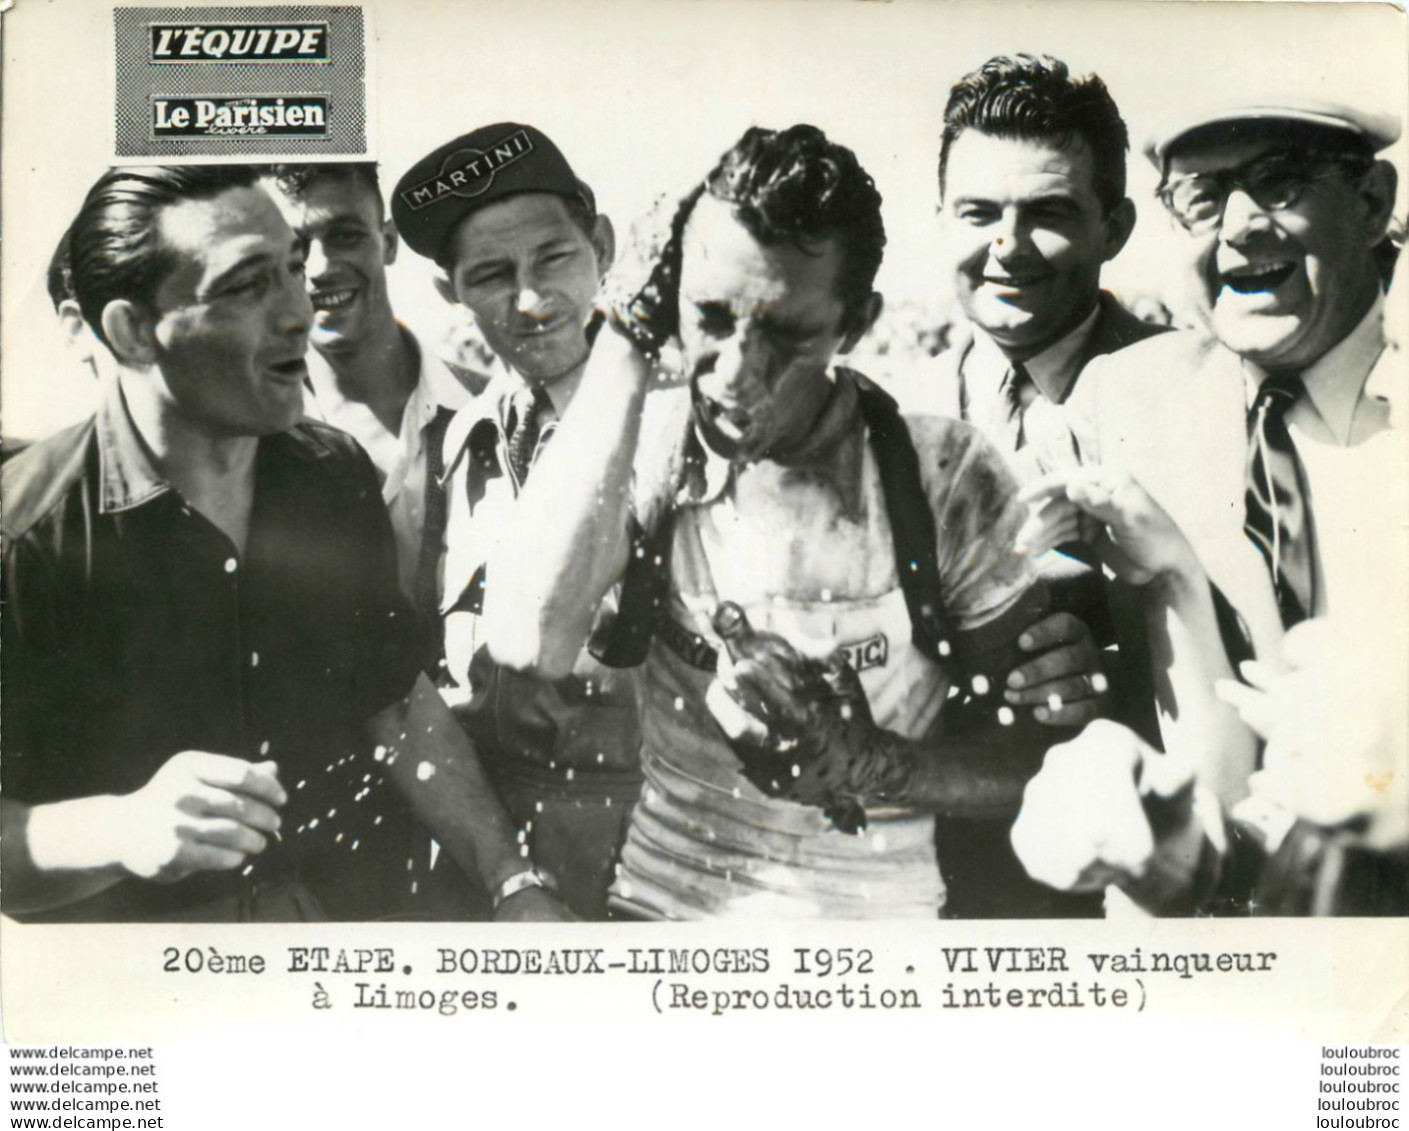 TOUR DE FRANCE 1952 VIVIER VAINQUEUR A LIMOGES 20èm ETAPE PHOTO PRESSE ORIGINALE ARGENTIQUE  20X15CM EQUIPE  LE PARISIEN - Sport